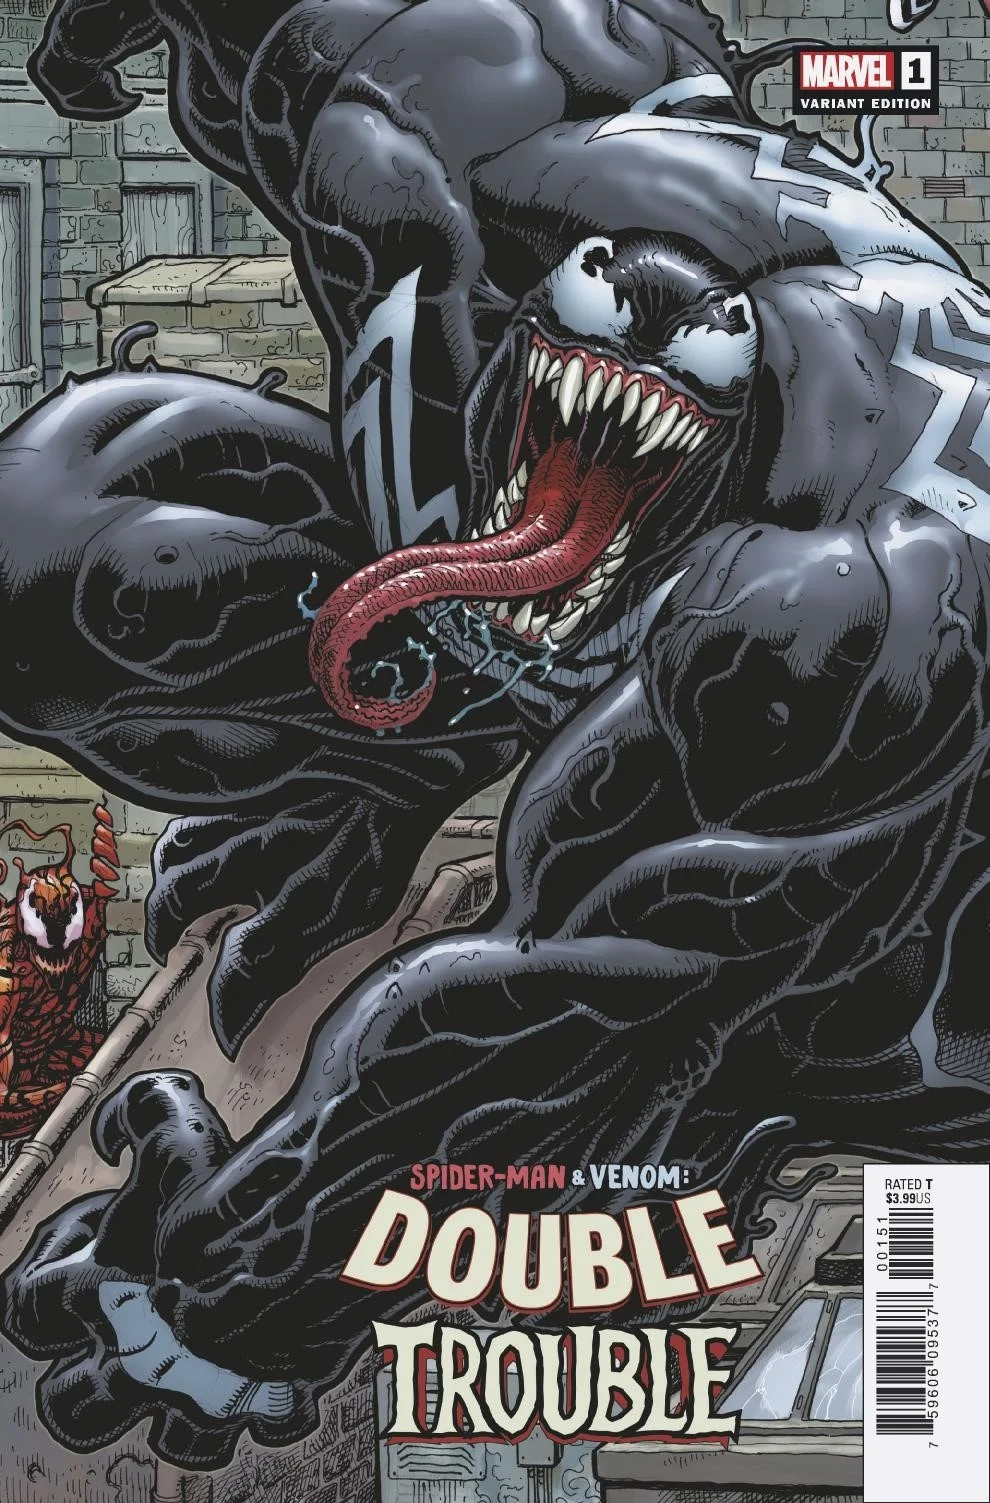 Человек-паук верхом на Веноме на альтернативных обложках к новому комиксу - фото 4